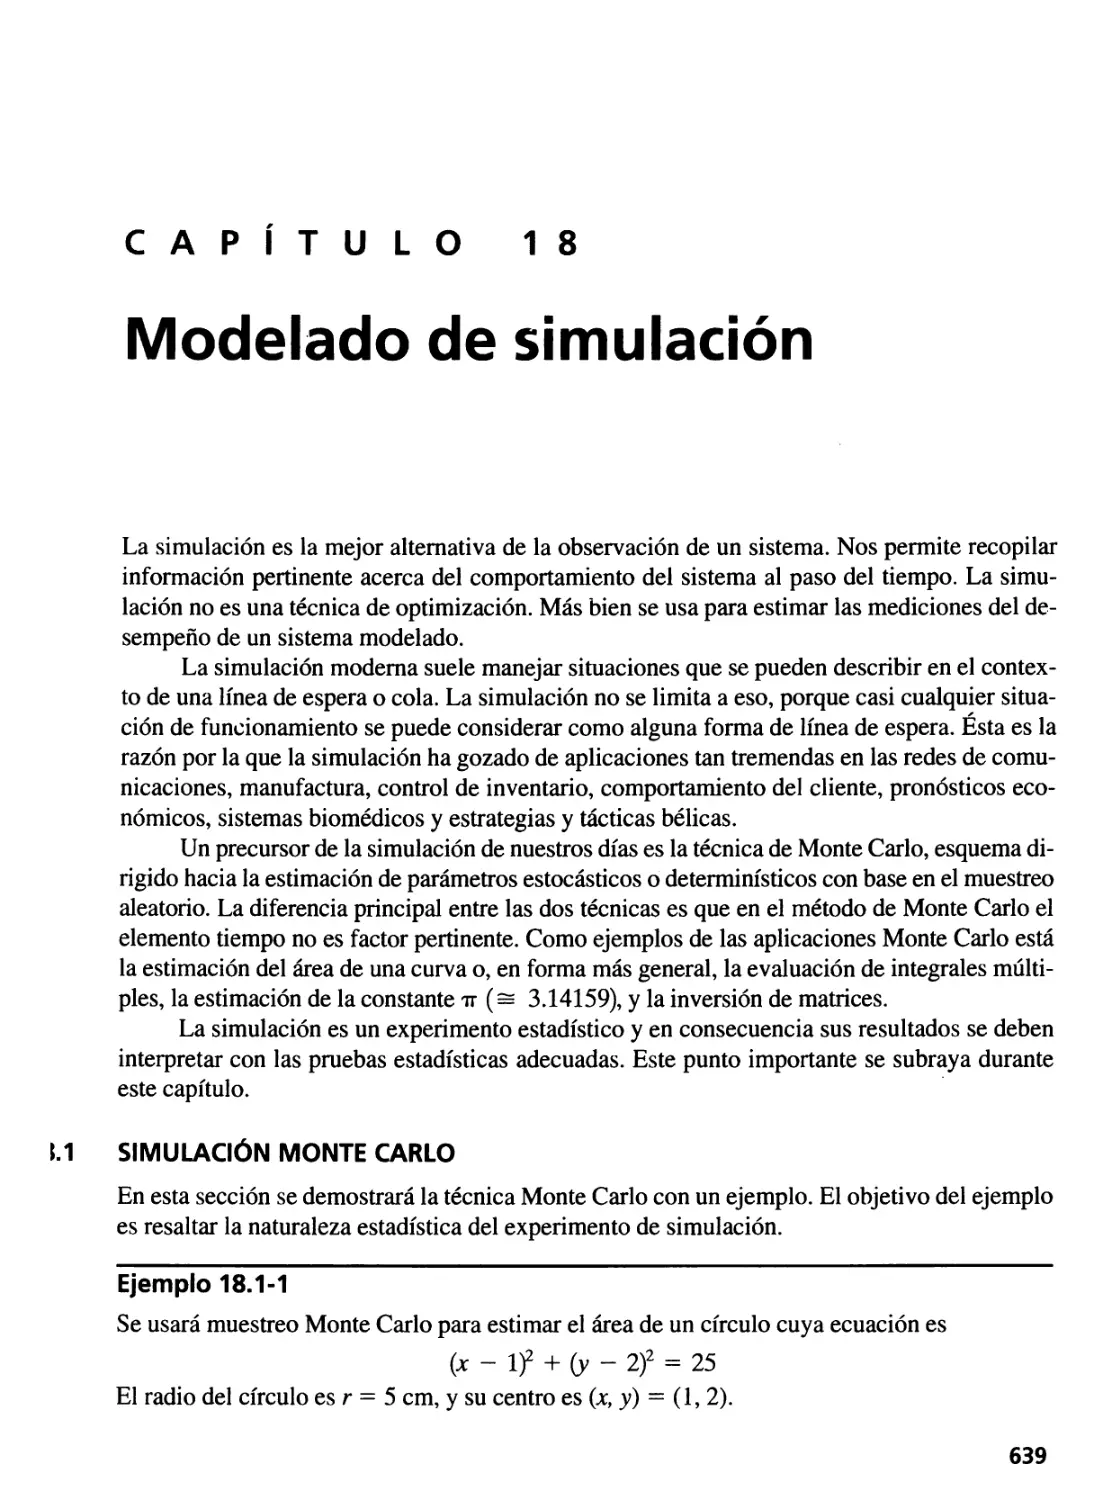 18. Modelado de simulación